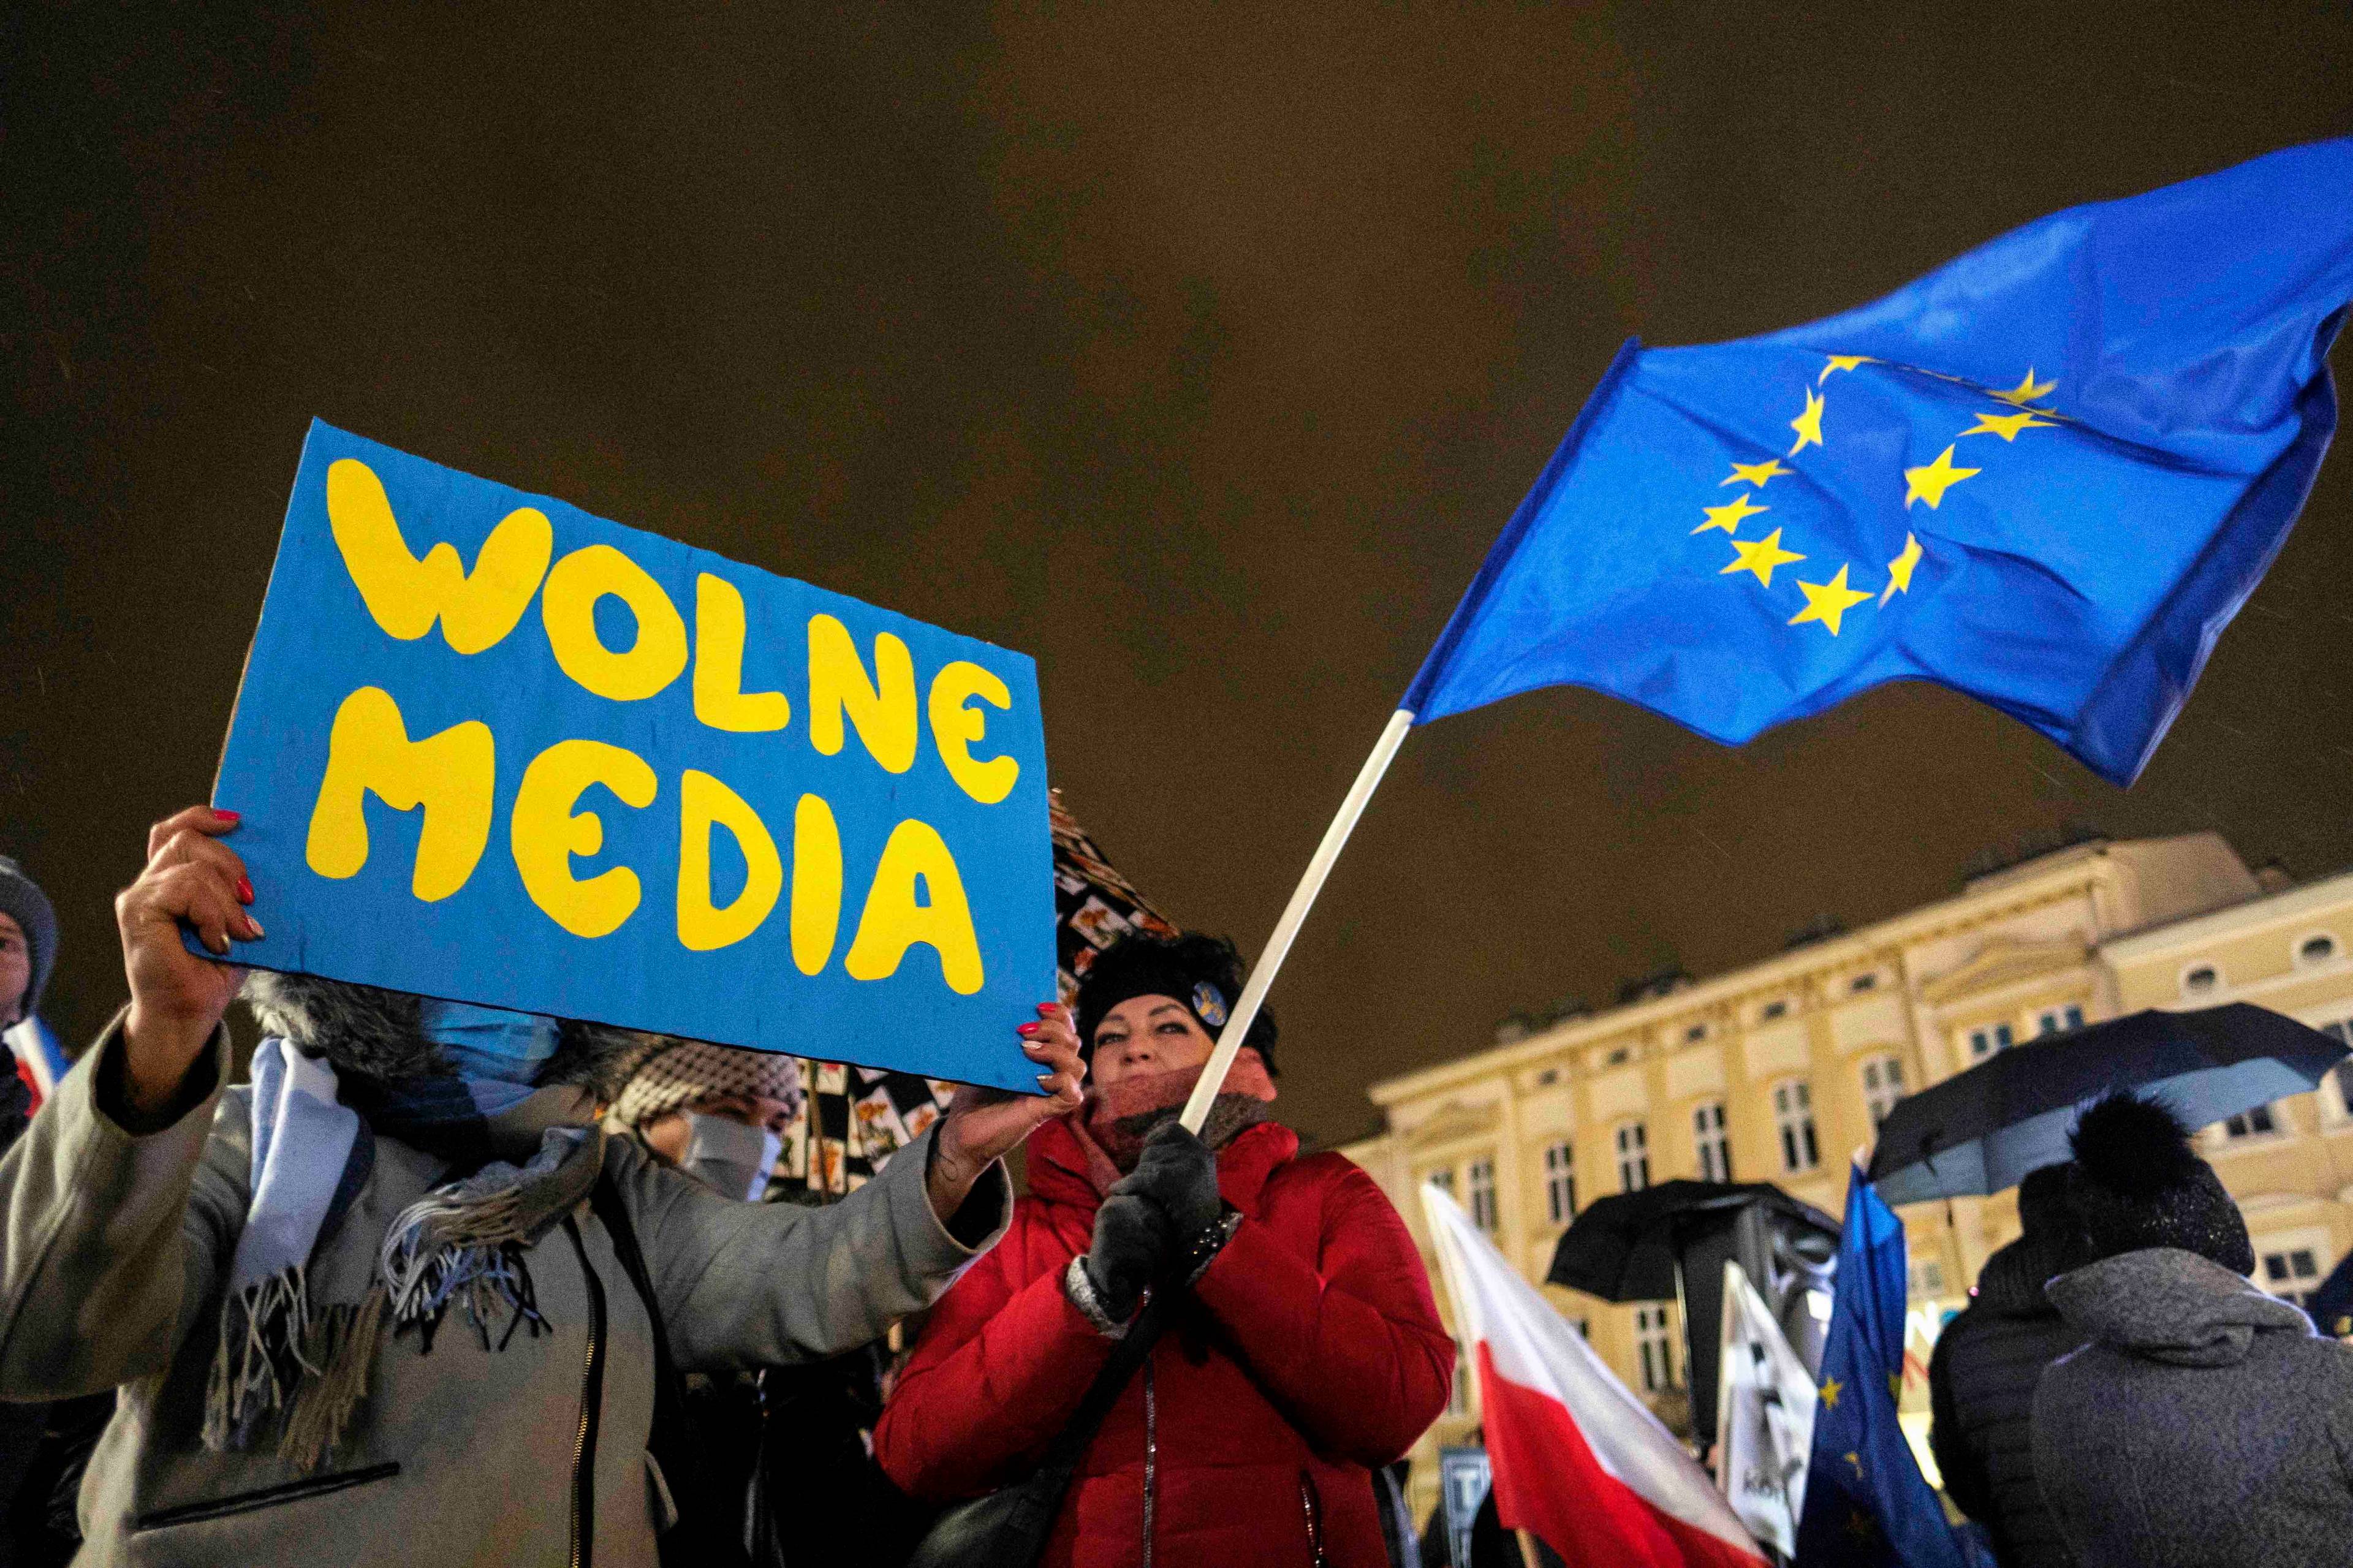 Wieczorna demonstracja, uczestnicy trzymaja plakat z napisem Wolne media oraz flagę Unii Europejskiej